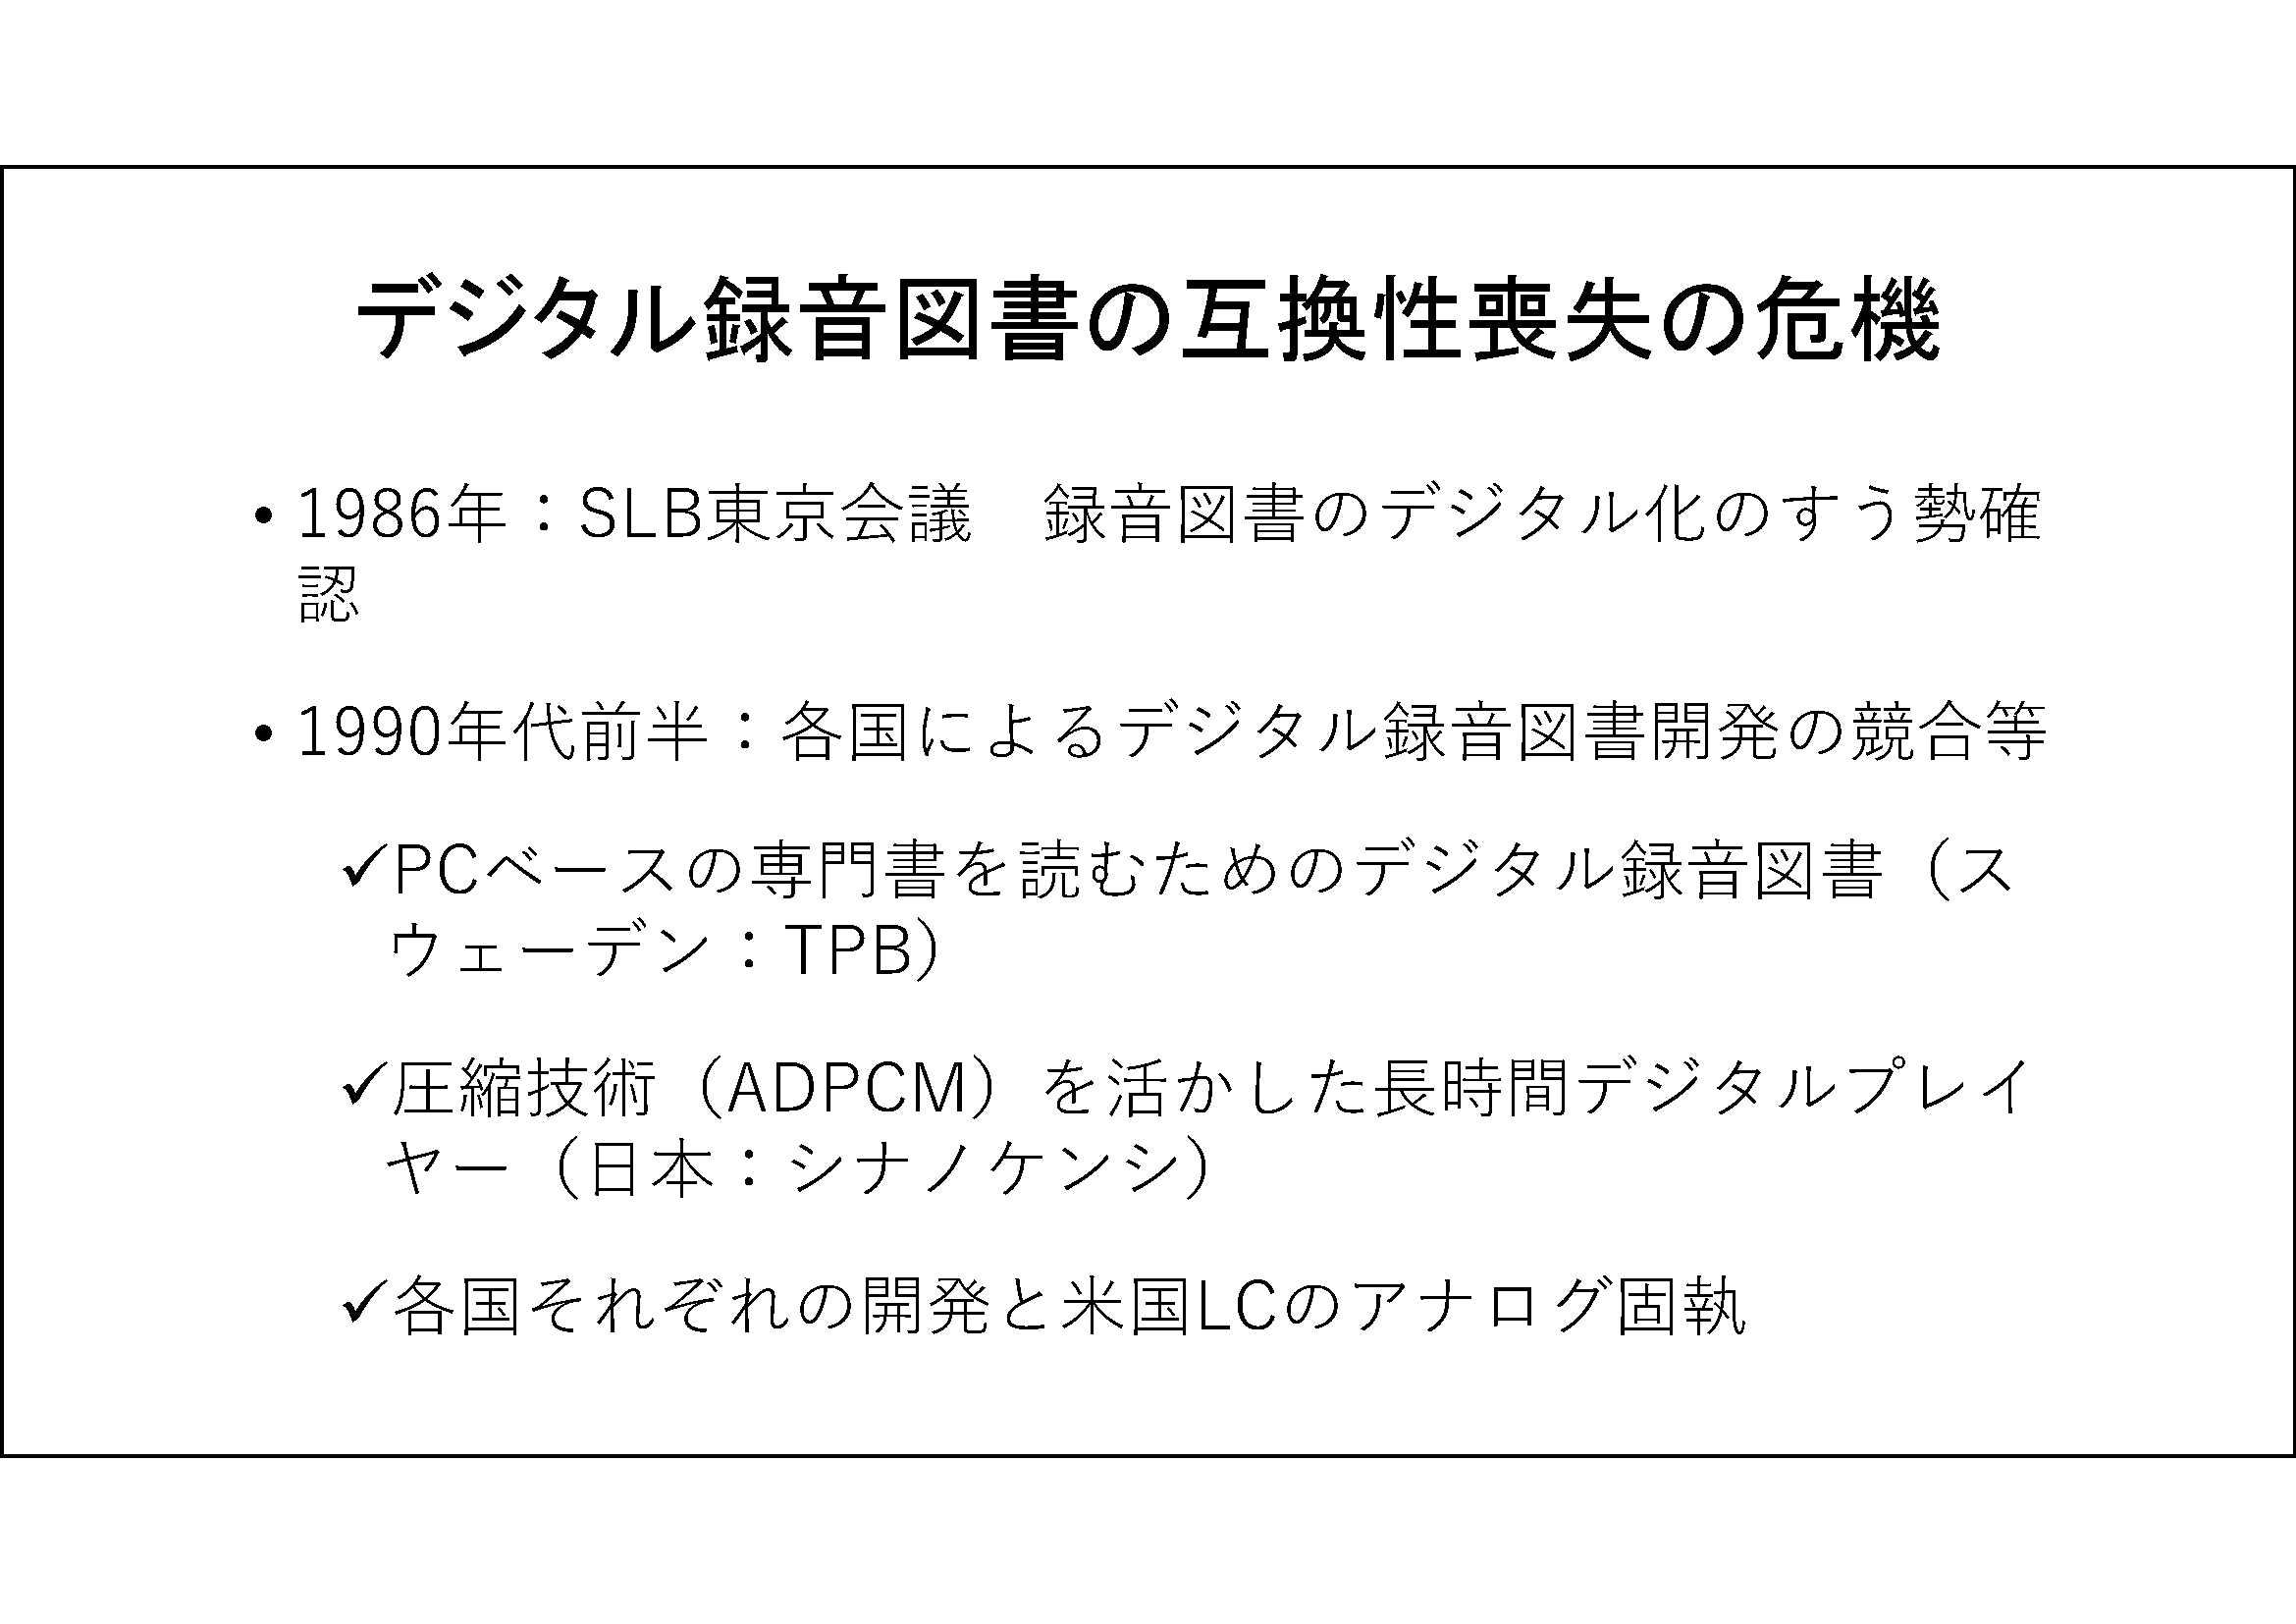 デジタル録音図書の互換性喪失の危機

	1986年：SLB東京会議　録音図書のデジタル化のすう勢確認

	1990年代前半：各国によるデジタル録音図書開発の競合等

	PCベースの専門書を読むためのデジタル録音図書（スウェーデン：TPB）

	圧縮技術（ADPCM）を活かした長時間デジタルプレイヤー（日本：シナノケンシ）
	各国それぞれの開発と米国LCのアナログ固執

	